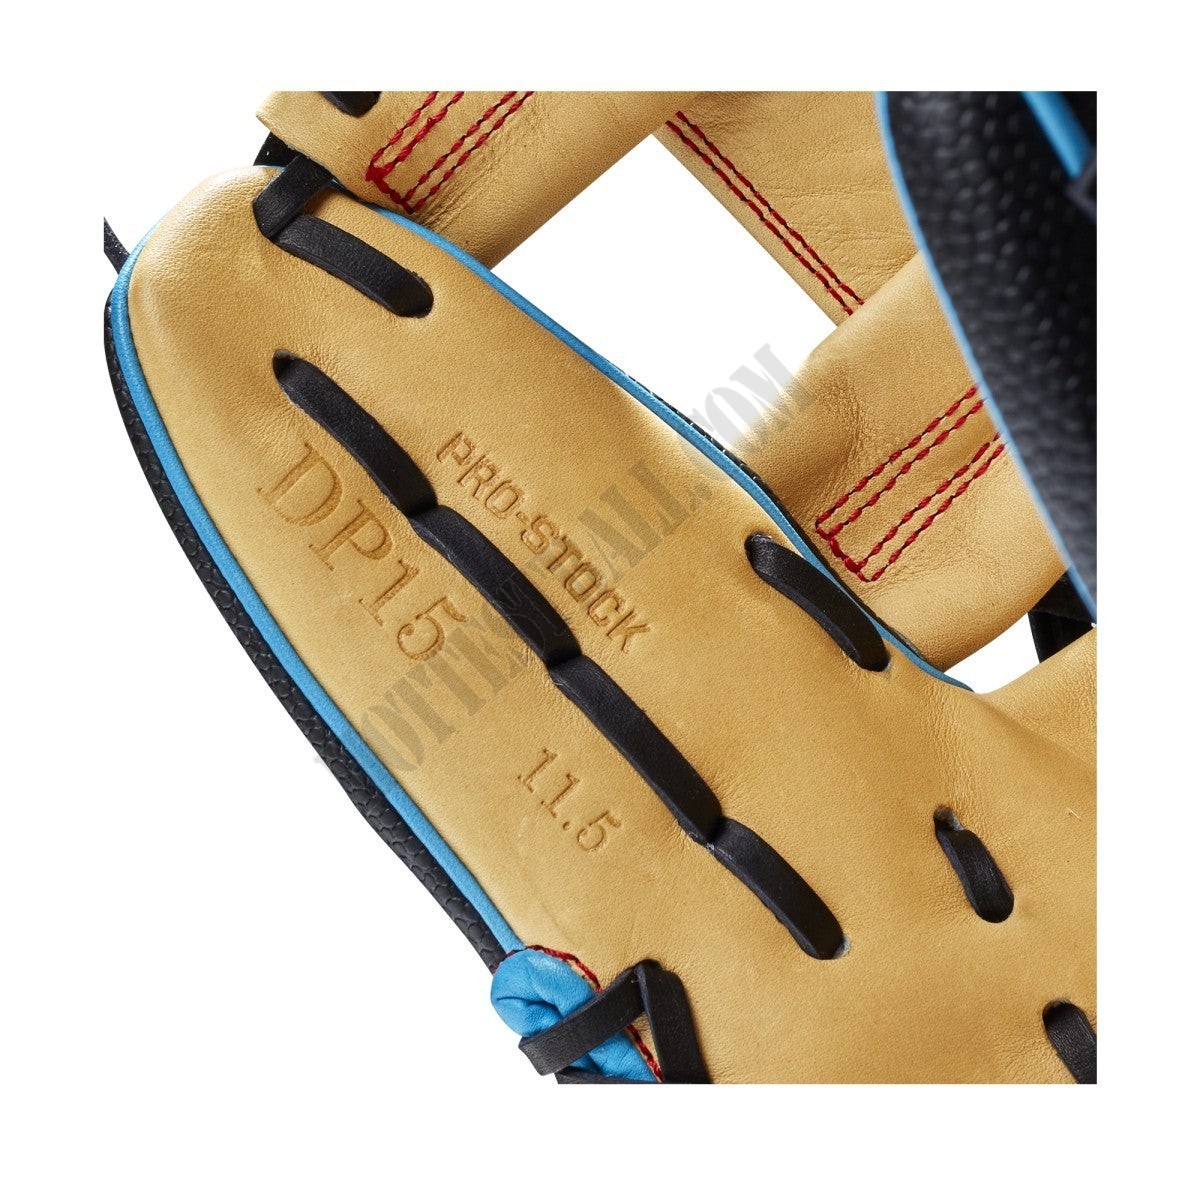 2021 A2000 DP15SS 11.5" Infield Baseball Glove ● Wilson Promotions - -7